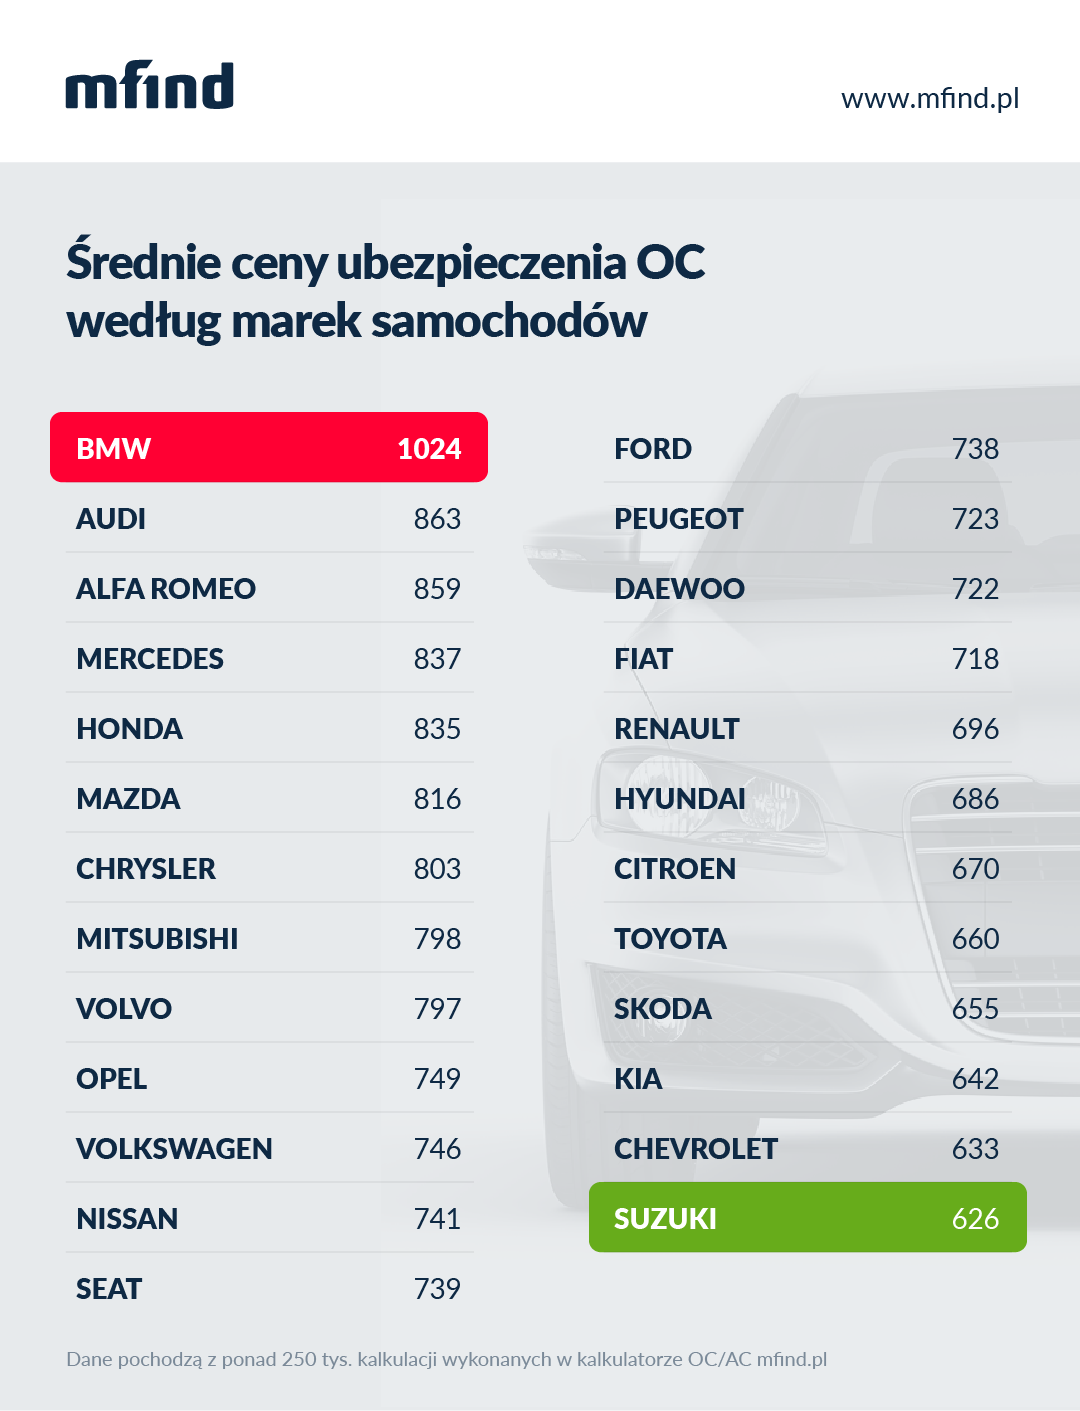 Średnie składki OC na auta konkretnych marek. Różnice potrafią być ogromne.